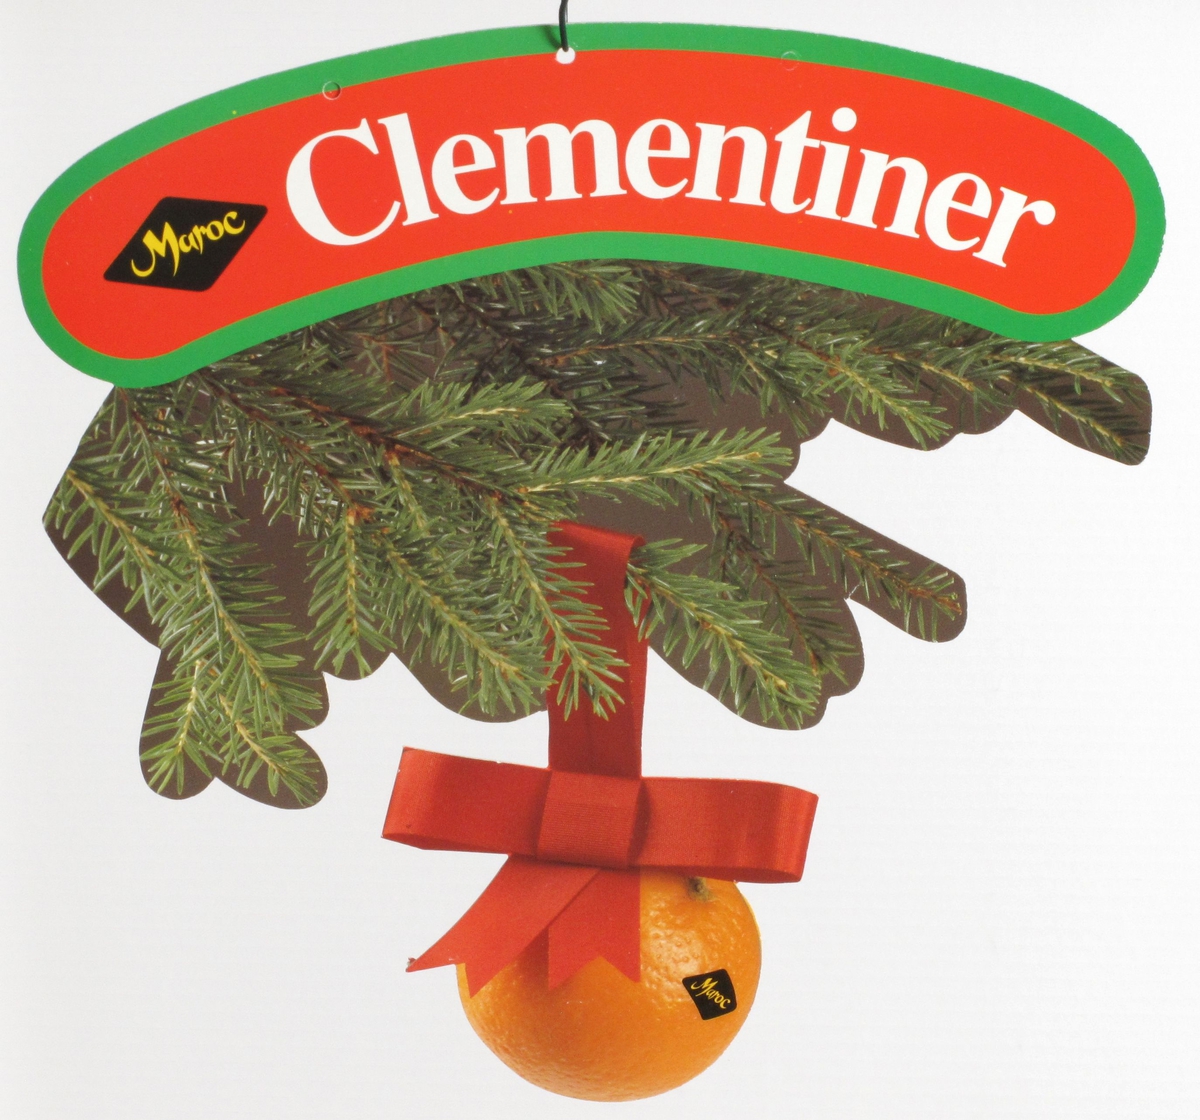 Clementin hengende i rødt juleband under grankvist.